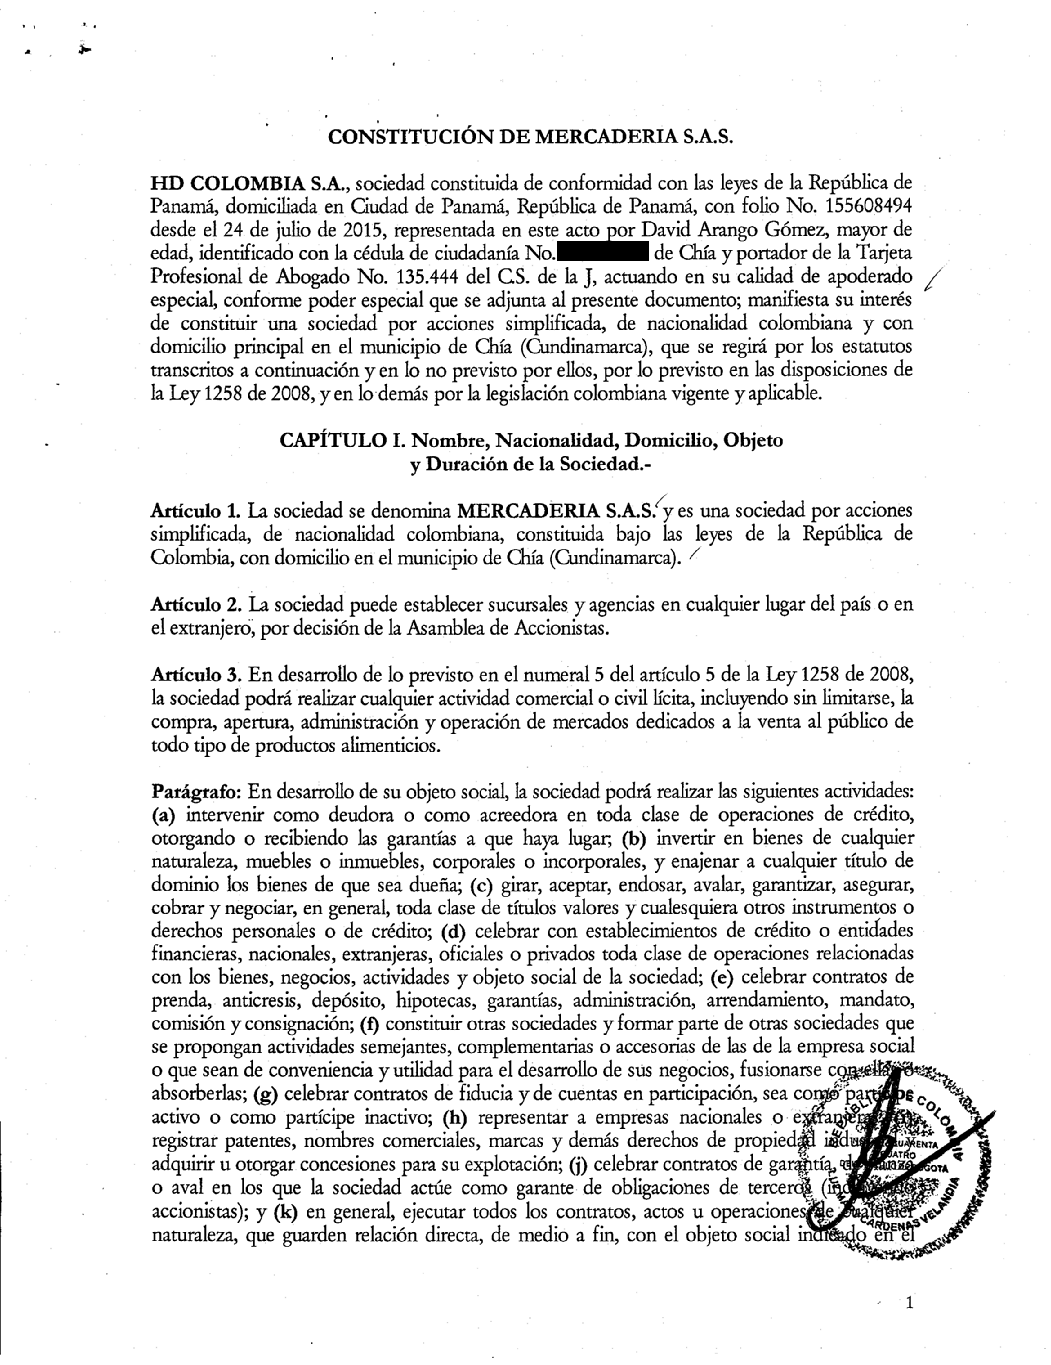 Documento de constitución de Mercadería SAS EN Colombia 